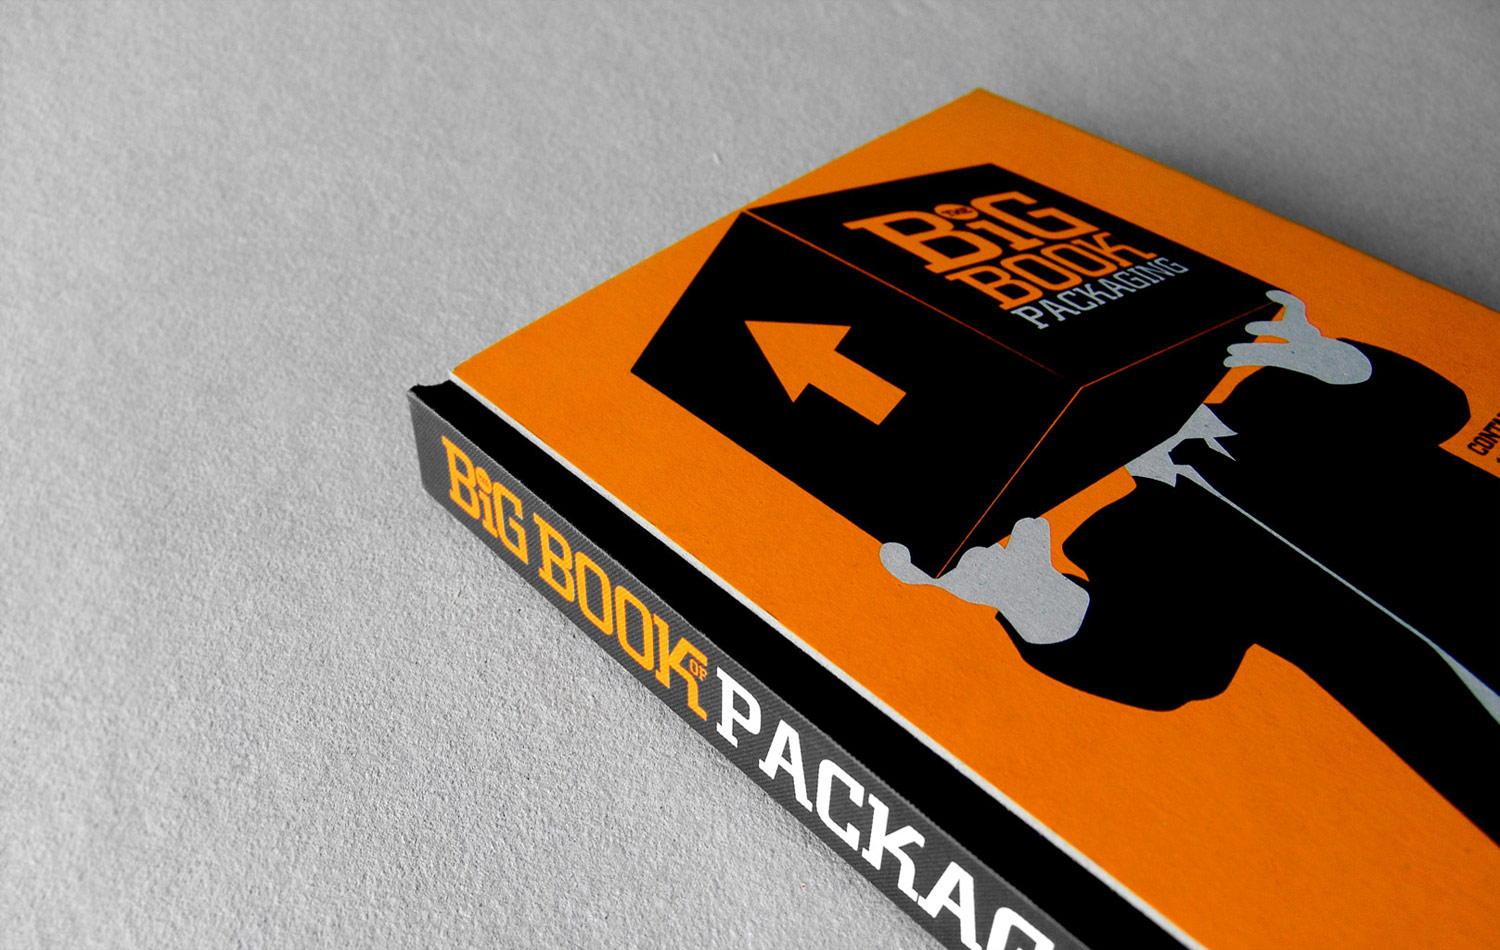 TASCHEN Books: The Package Design Book. Volume 2